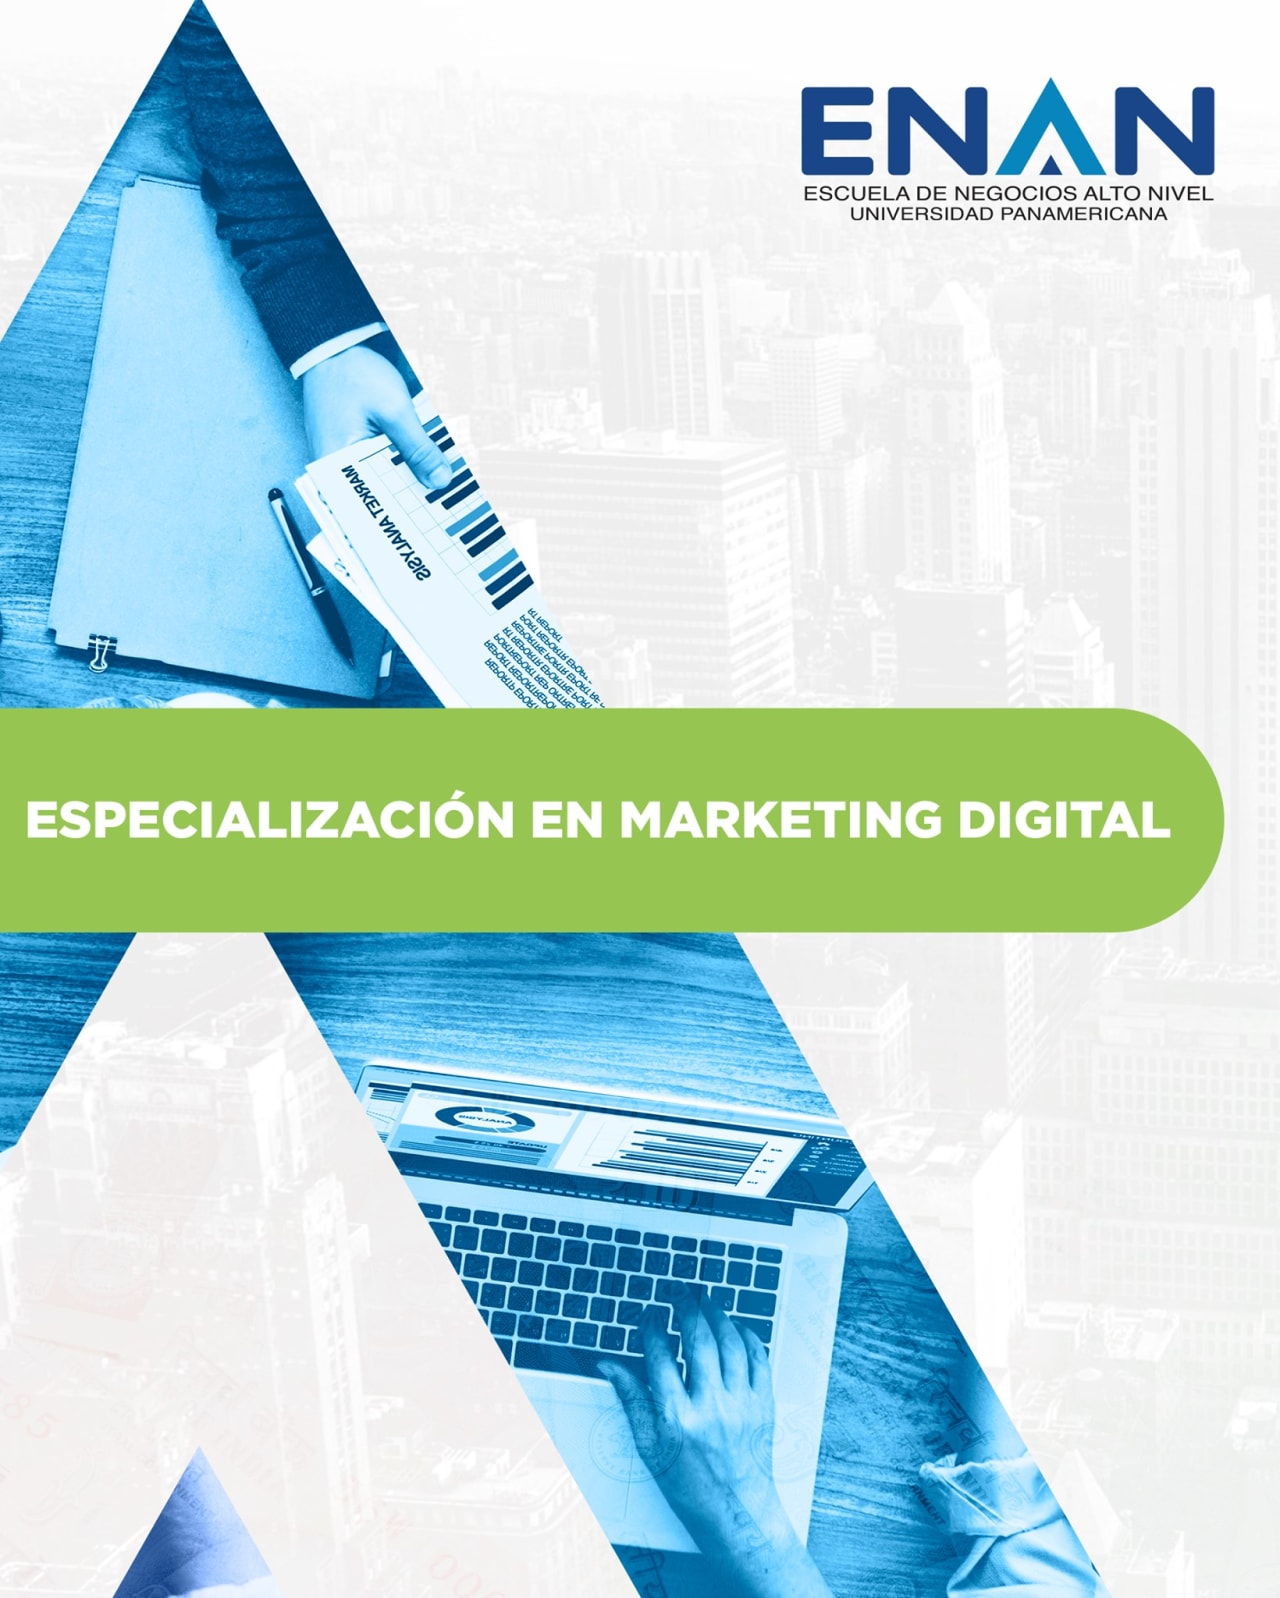 Escuela de Negocios Alto Nivel - Universidad Panamericana de Guatemala डिजिटल मार्केटिंग में विशेषज्ञता